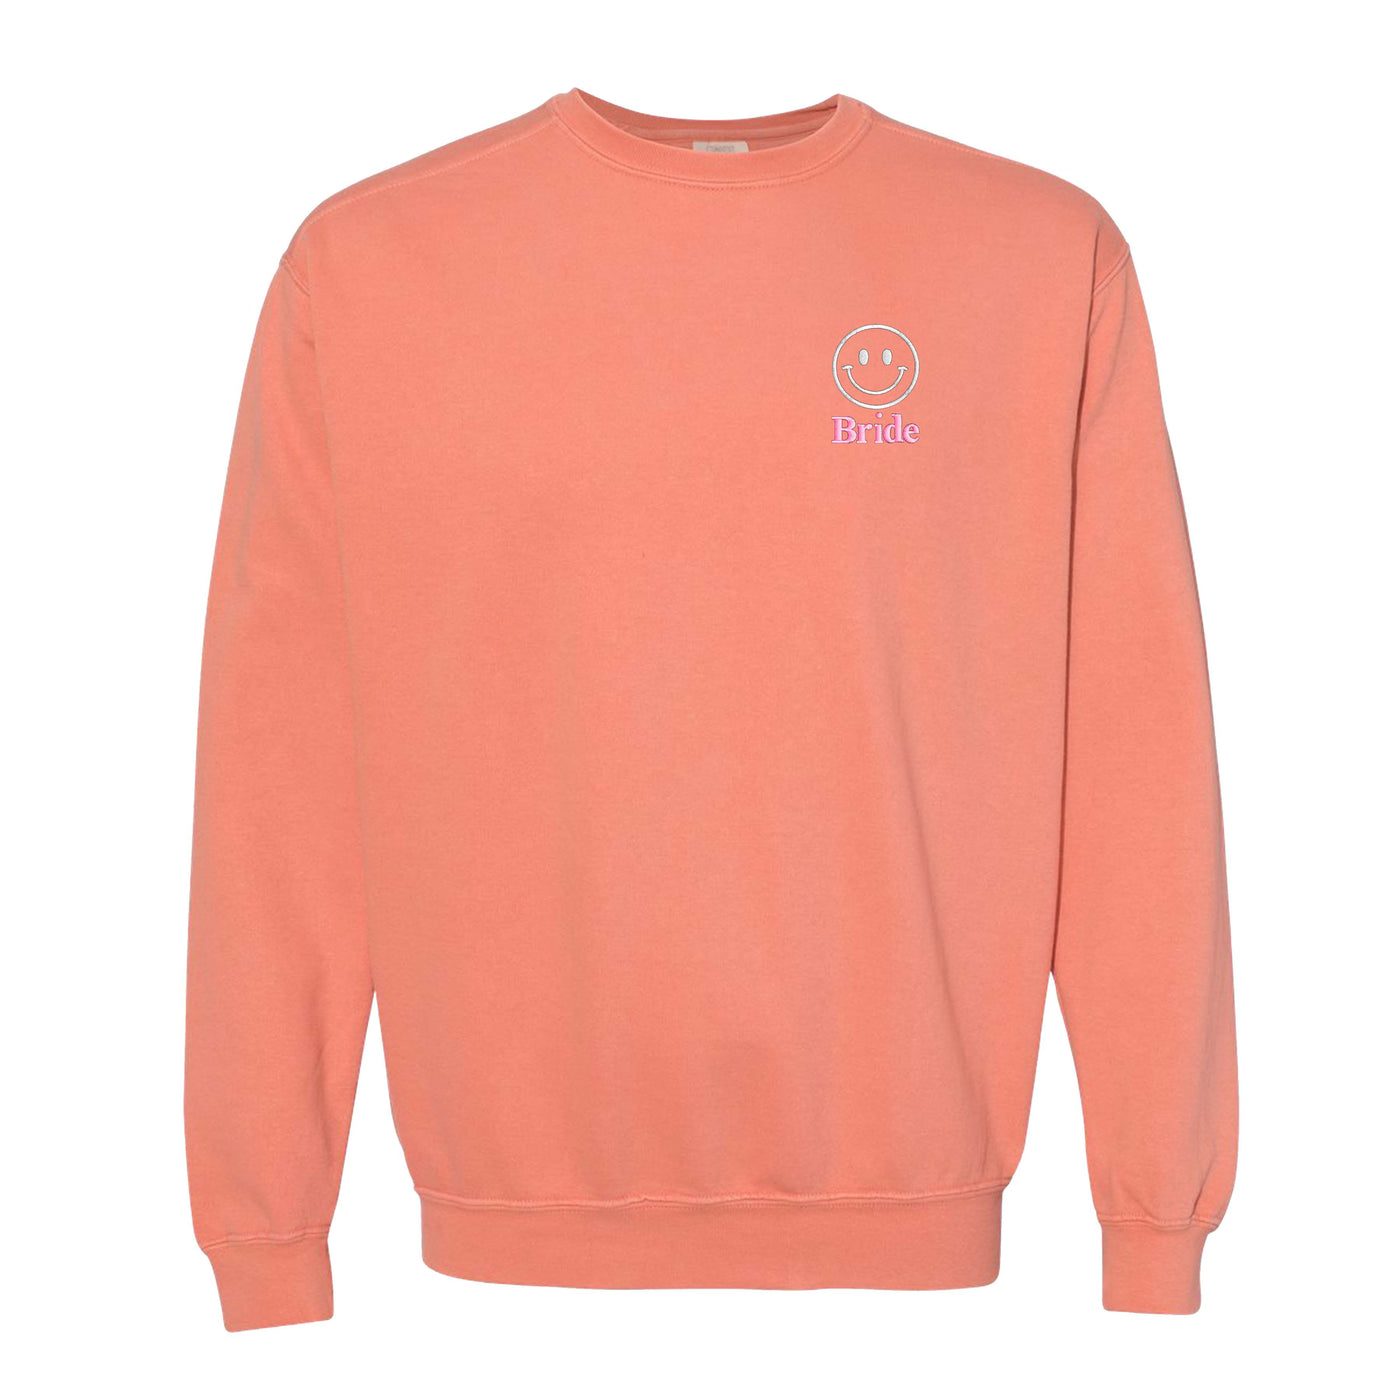 'Smiley Face' Comfort Colors Sweatshirt